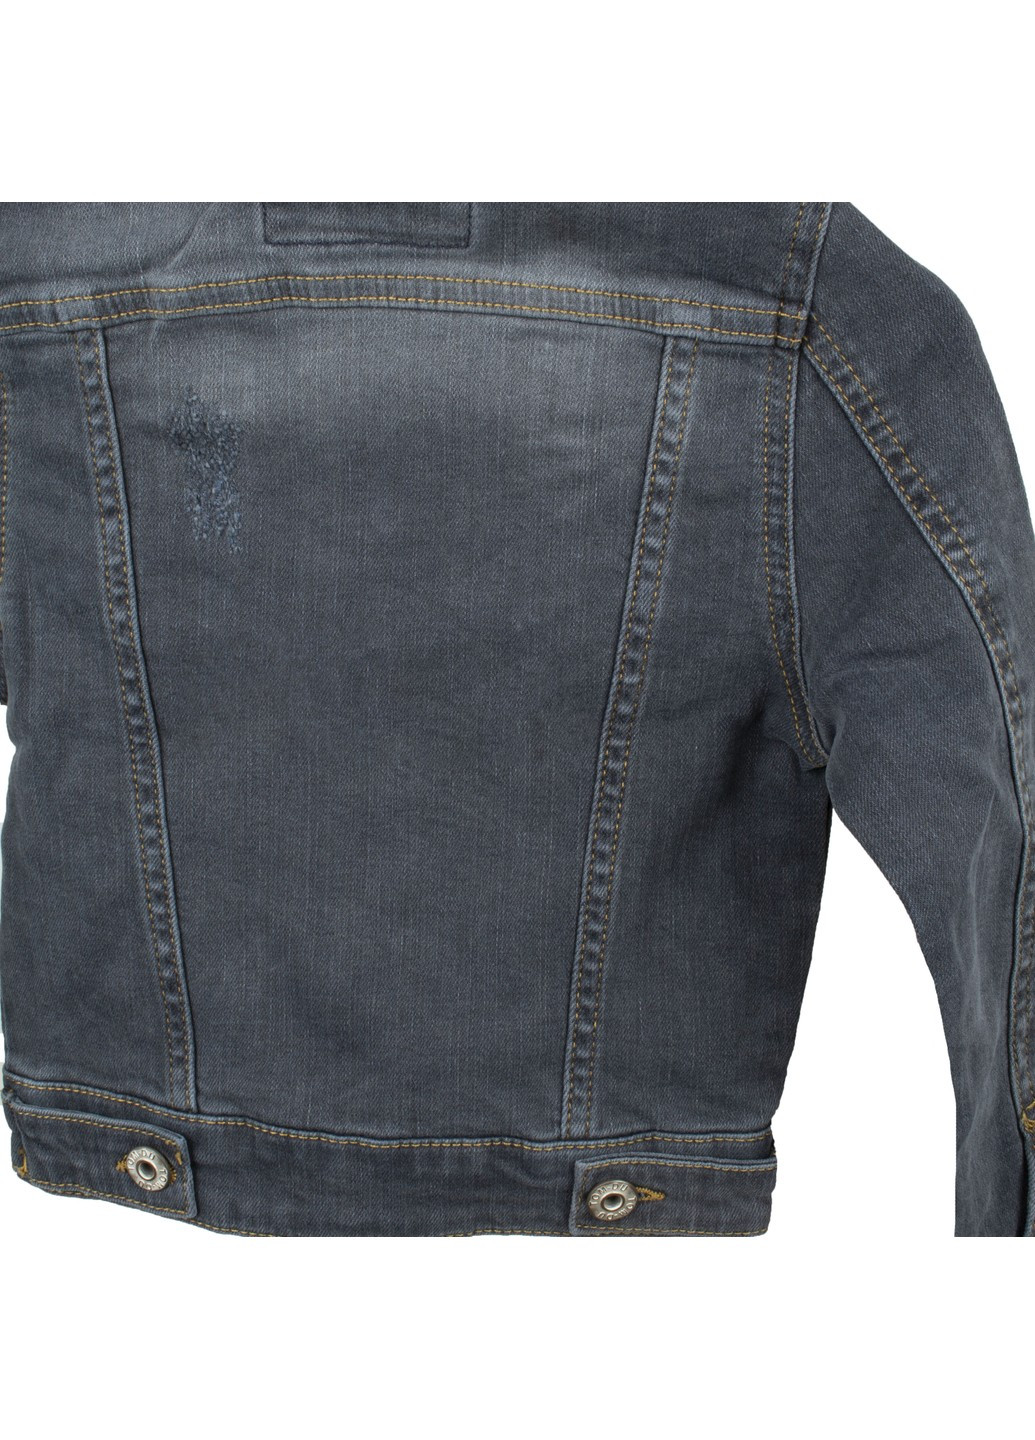 Серая курточка джинсовая детская tom-du TOM DU